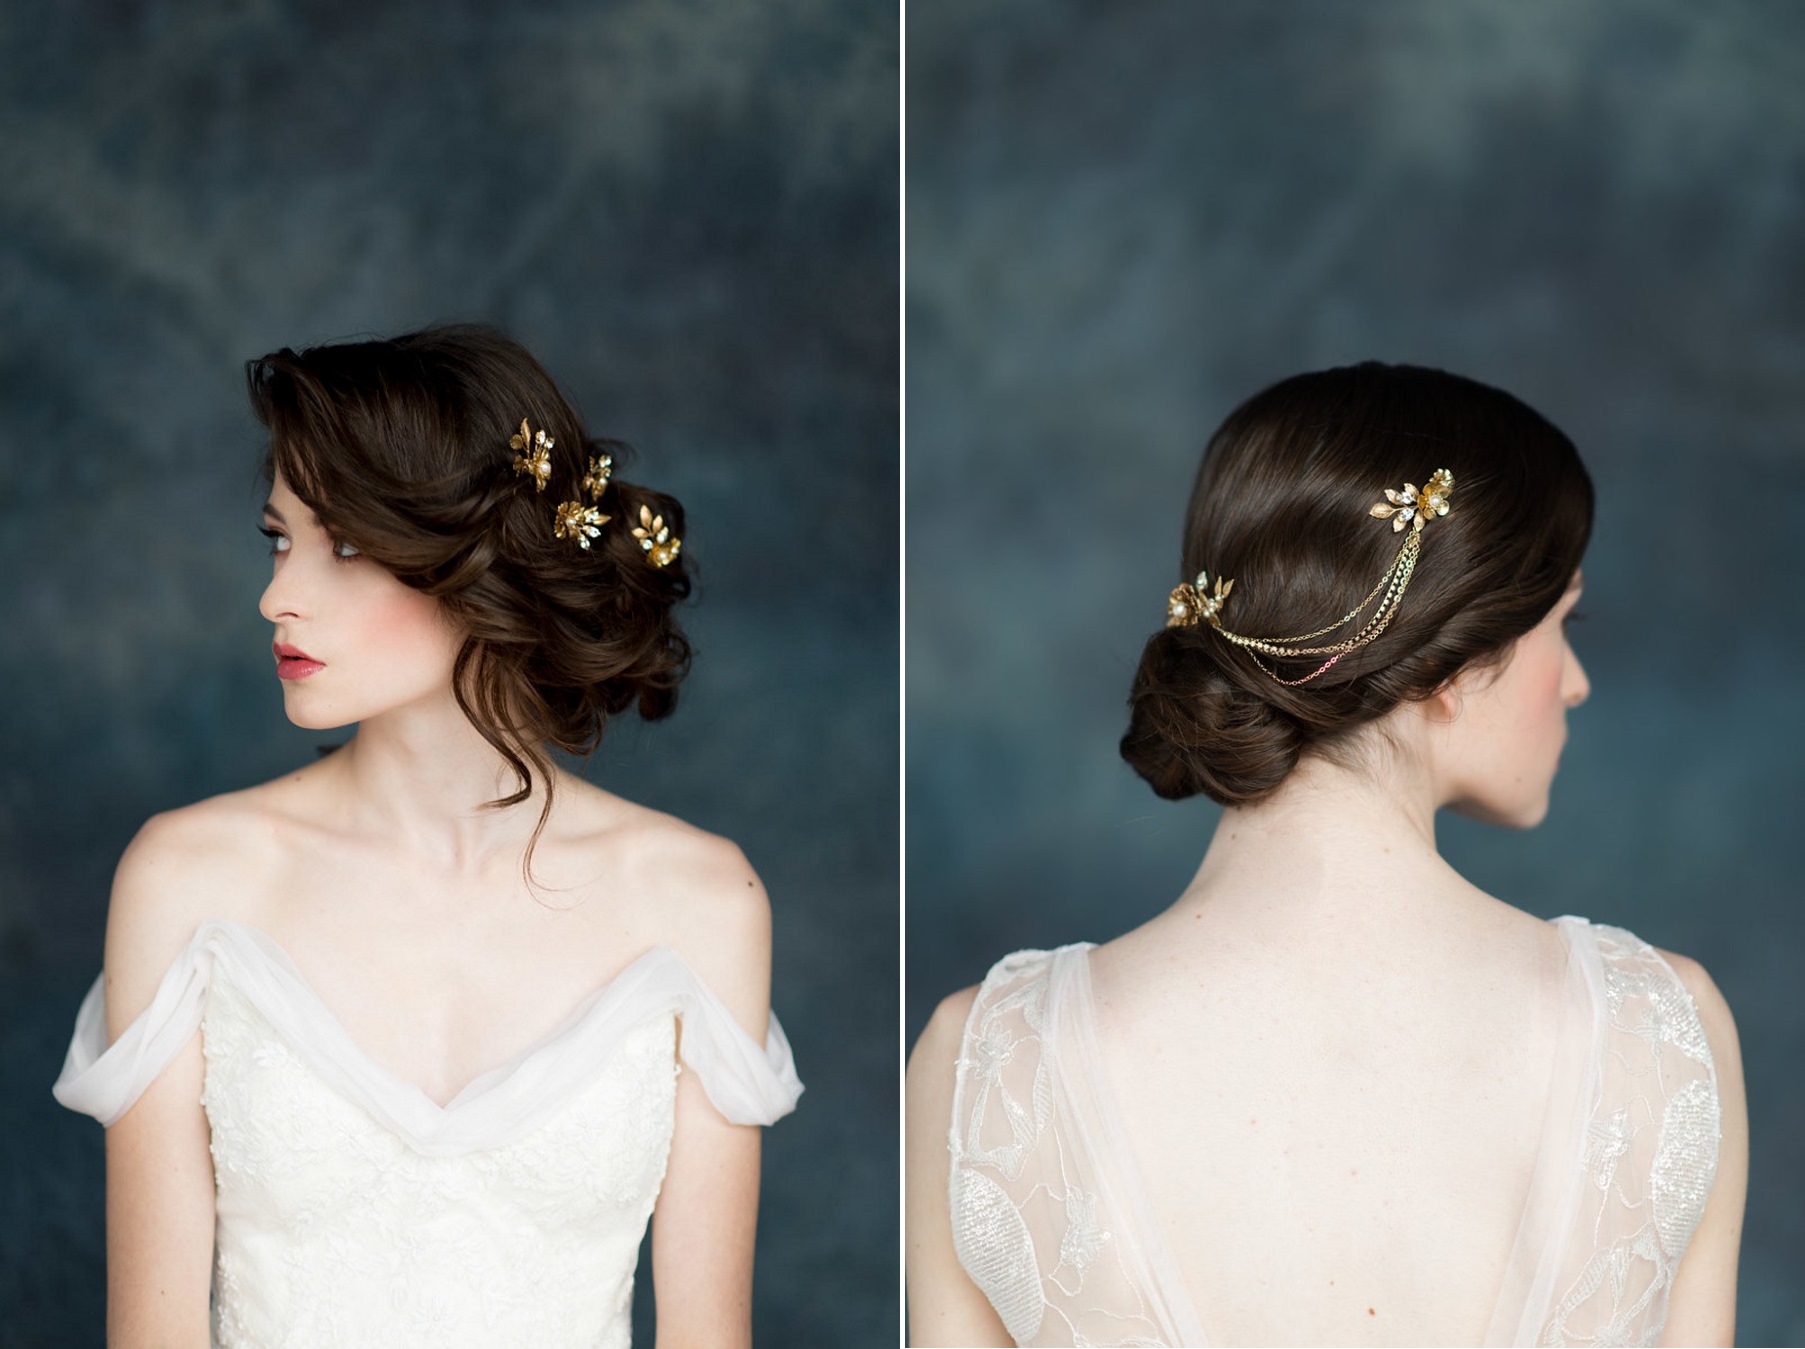 Bianca & Elsie Gold Bridal Hair Adornments from Blair Nadeau